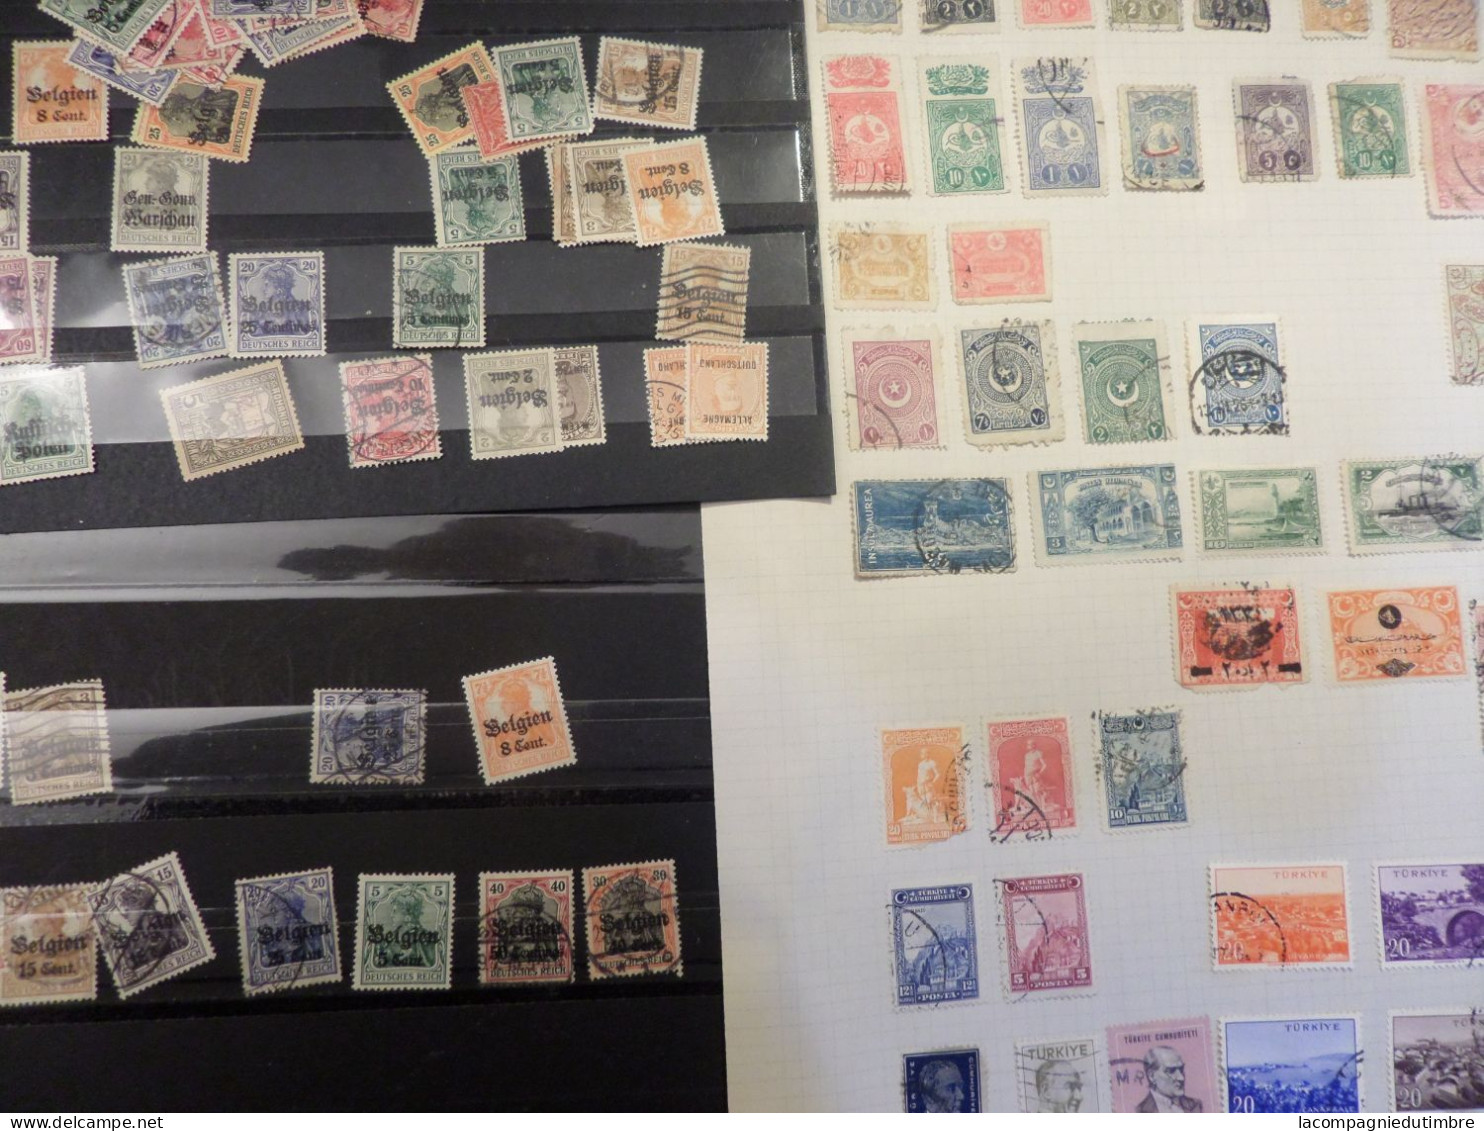 Superbe vrac de milliers de timbres anciens **/*/obl. tous pays. Classiques et bonnes valeurs.   COTE ENORME!!!!